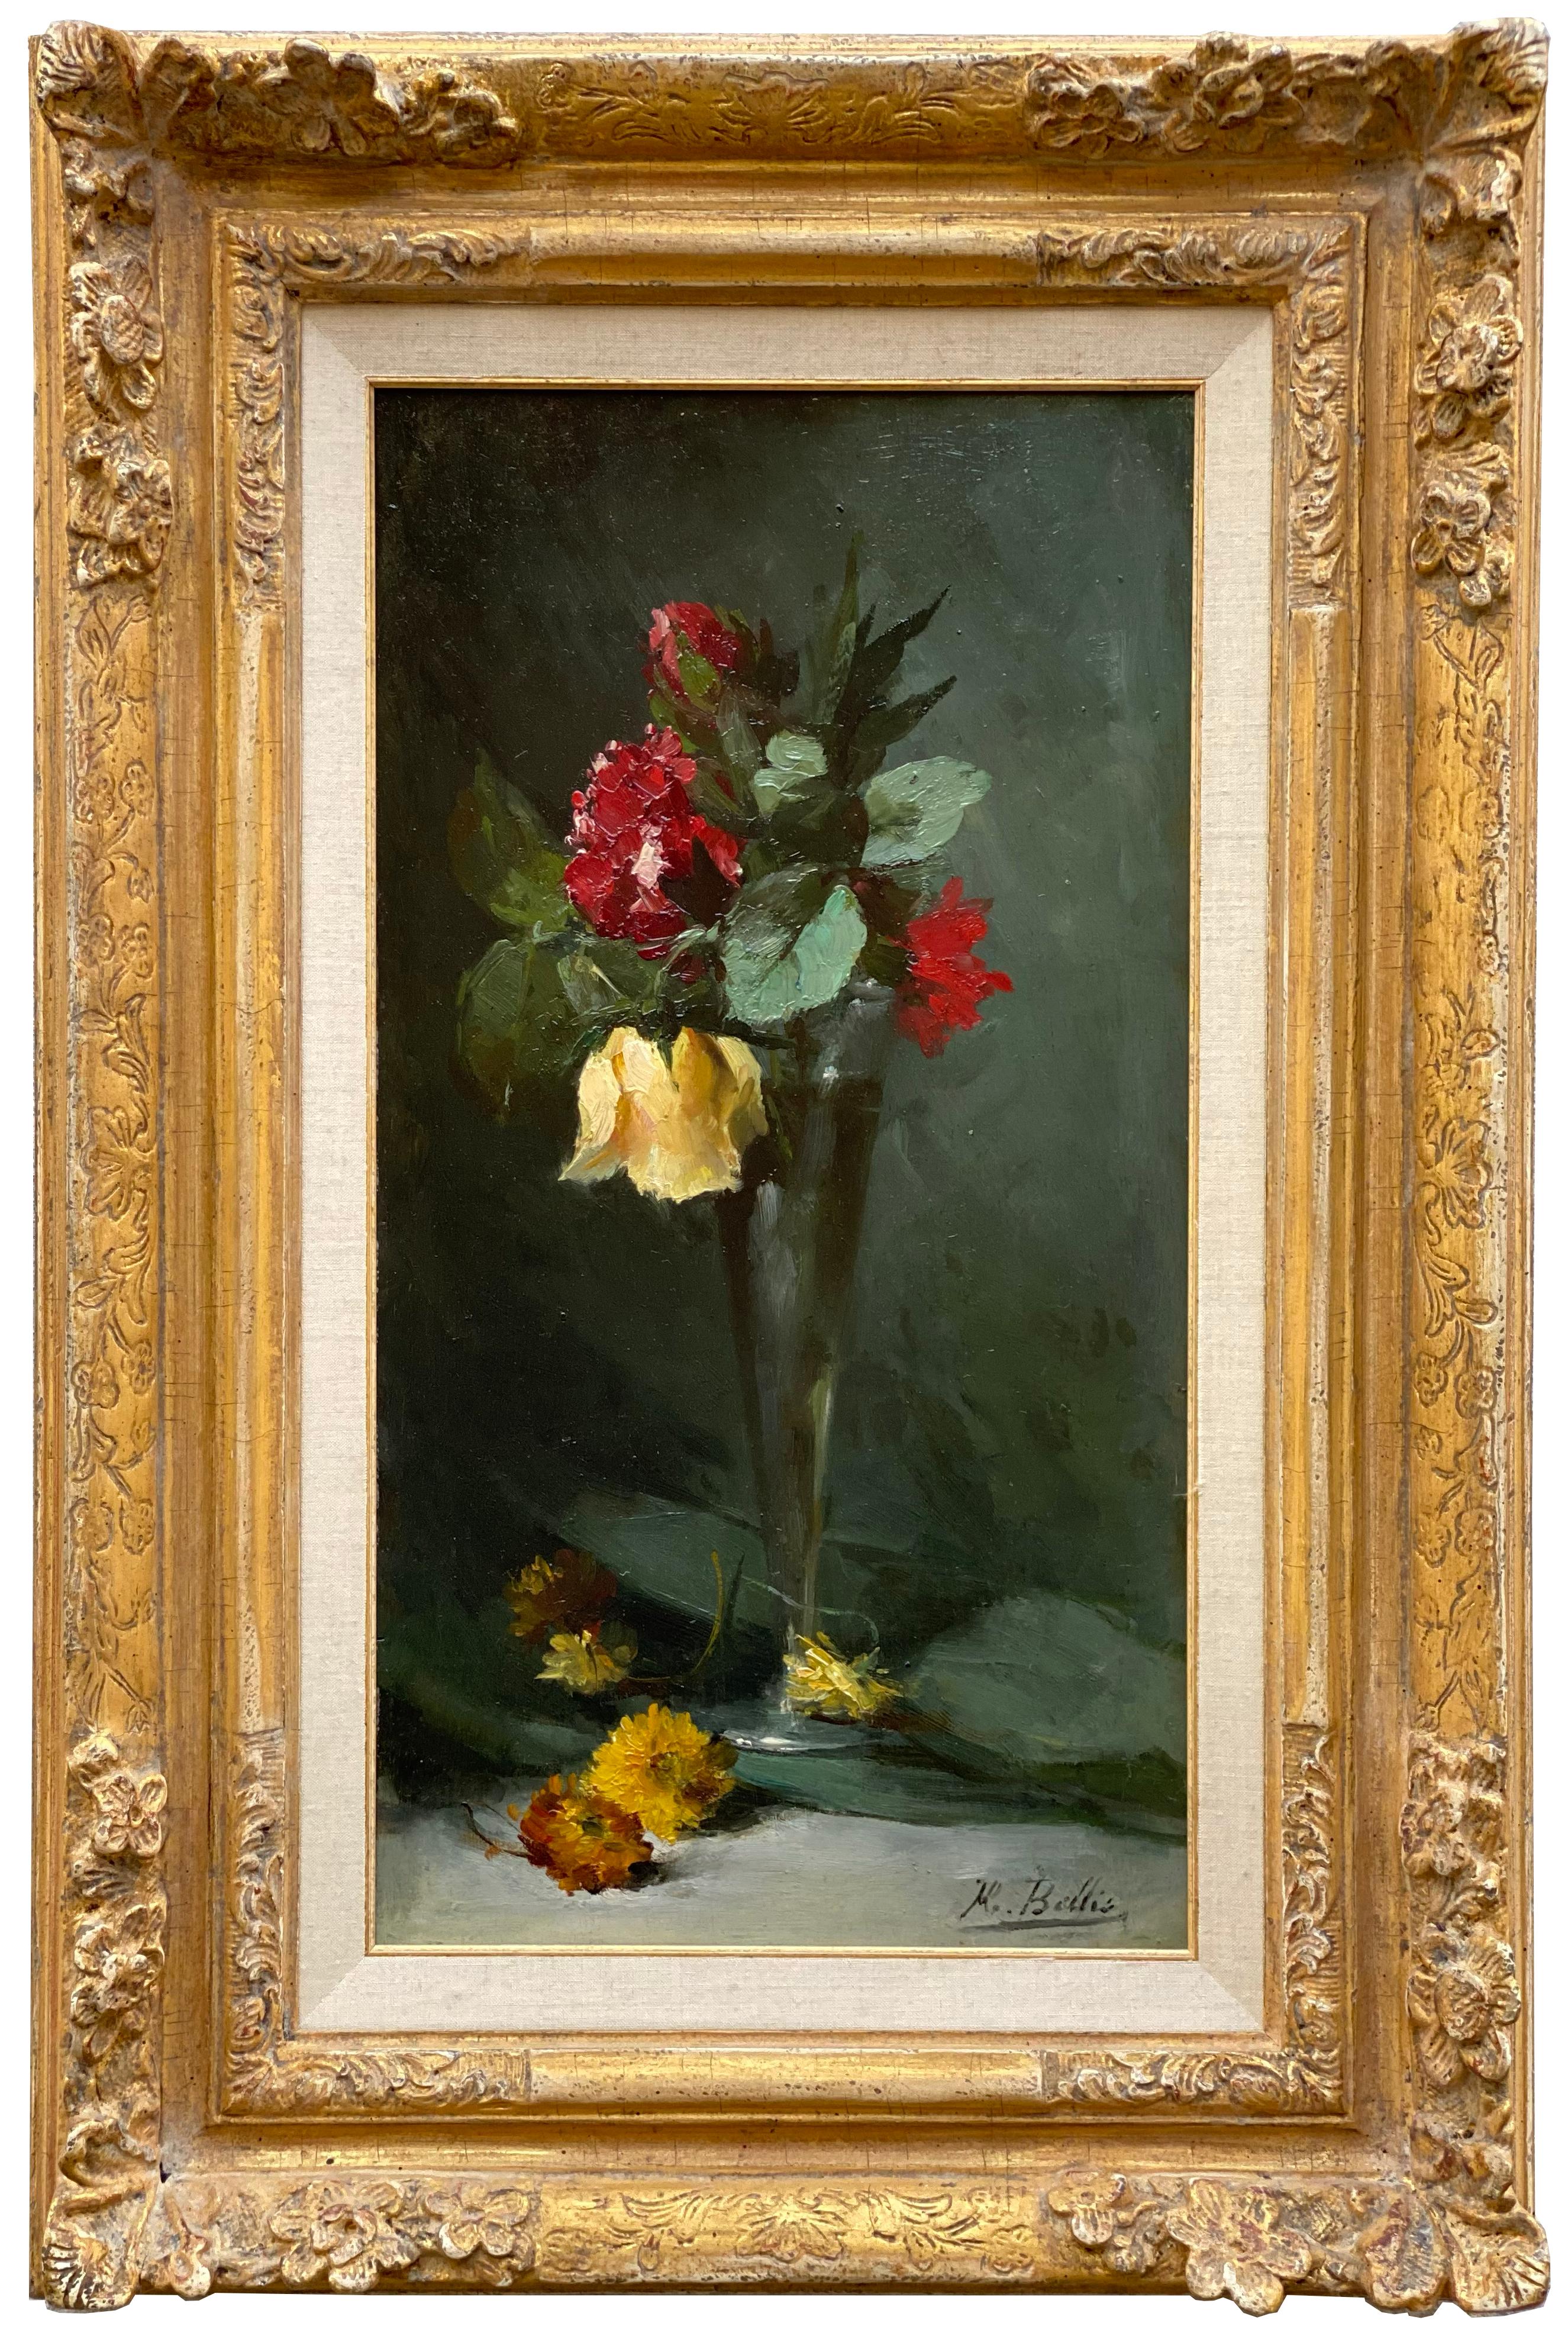 HUBERT BELLIS Figurative Painting –   Hubert Bellis, Brüssel 1831 - 1902, belgischer Maler, "Rote und gelbe Rosen".